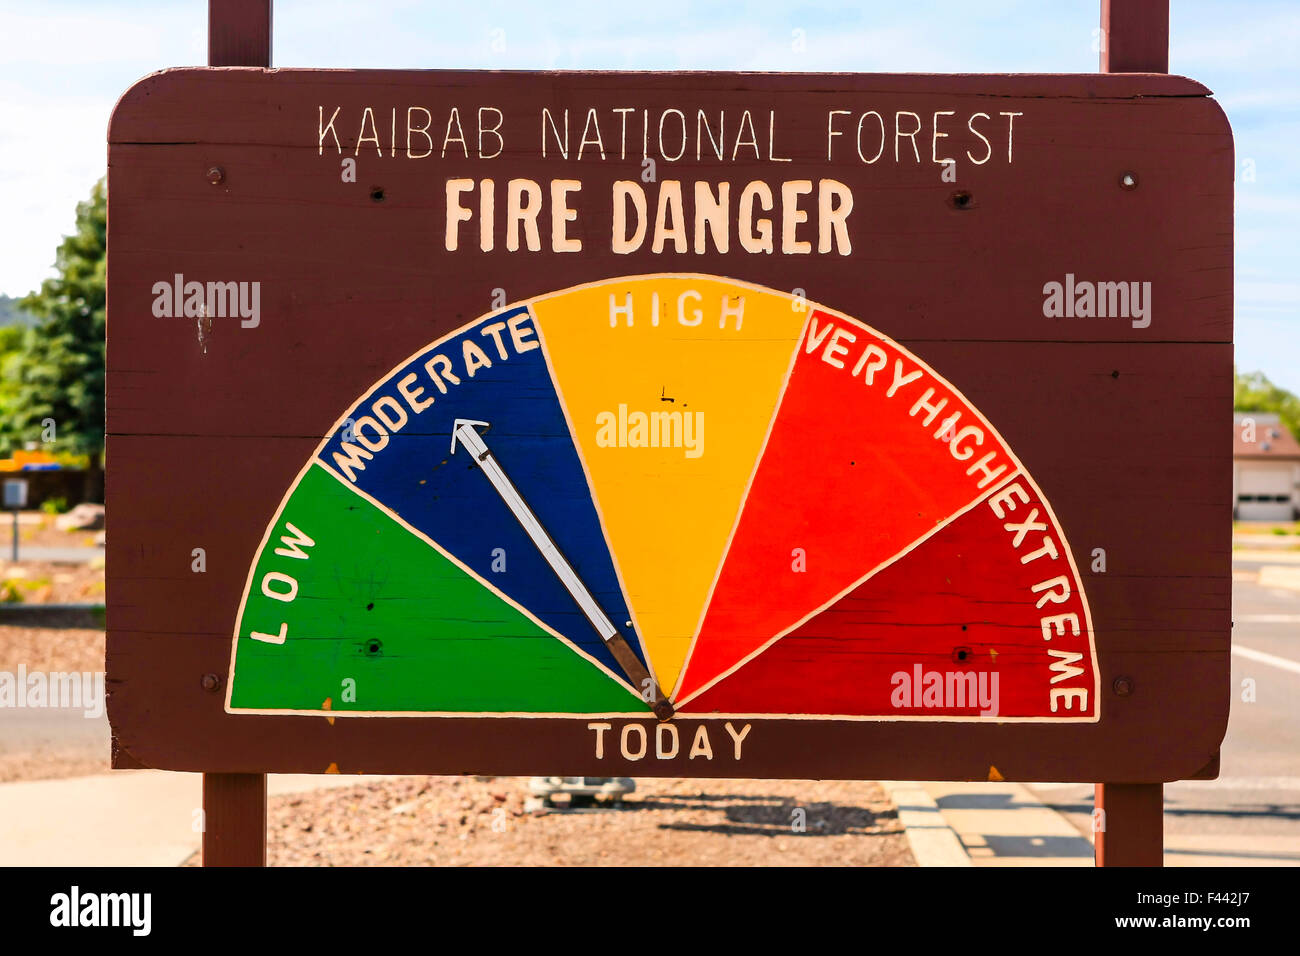 Risque de feu de forêt nationale Kaibab signe du moniteur avec un relevé de risques d'incendie modéré ce jour Banque D'Images